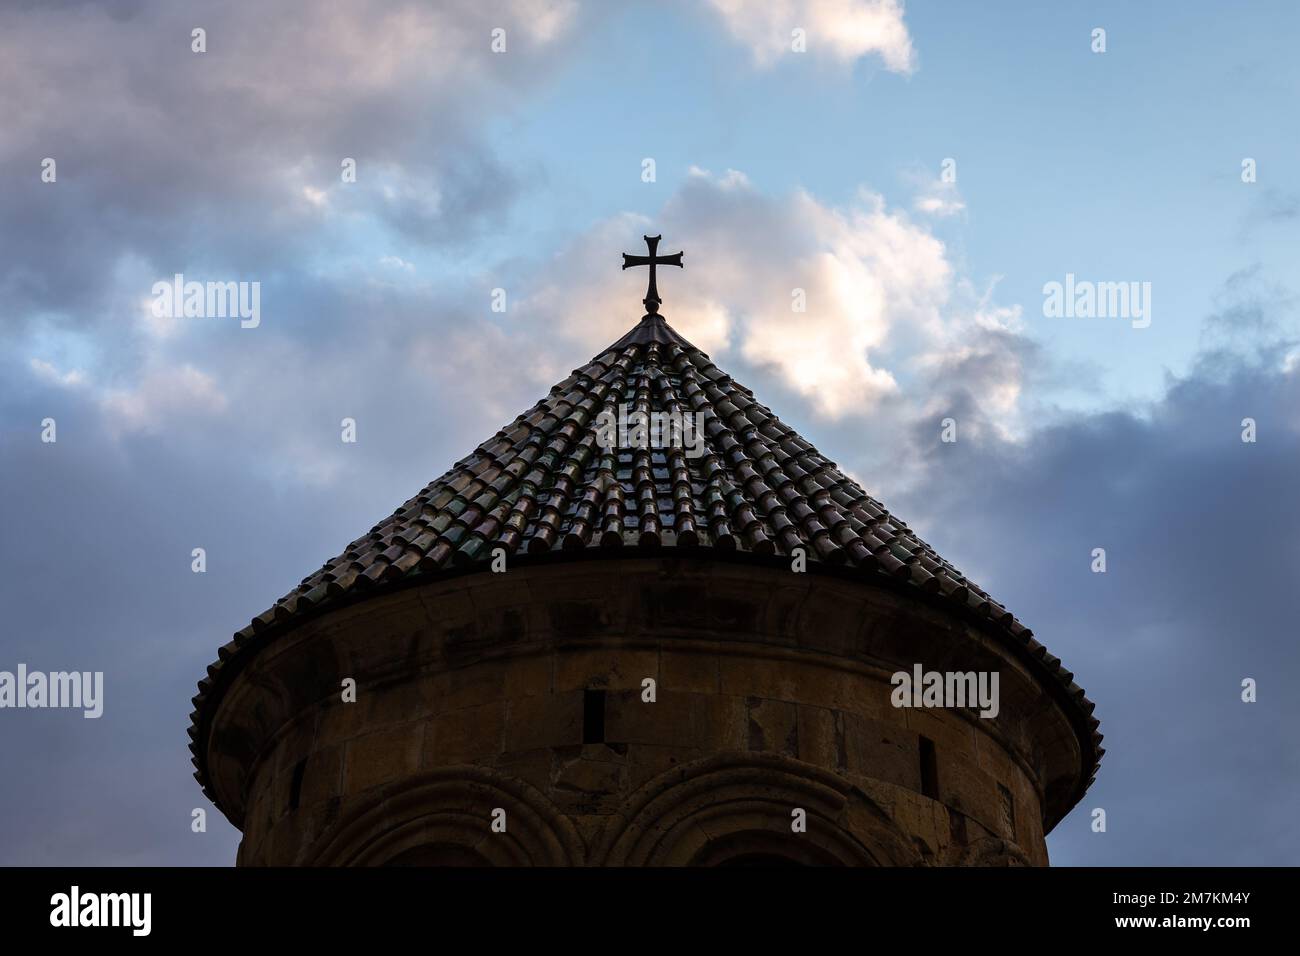 Belfry du monastère de la Gelati (clocher) silhouette sombre sur ciel bleu ciel nuageux, vue symétrique avec toit en tuiles vertes et croix sur le dessus. Banque D'Images